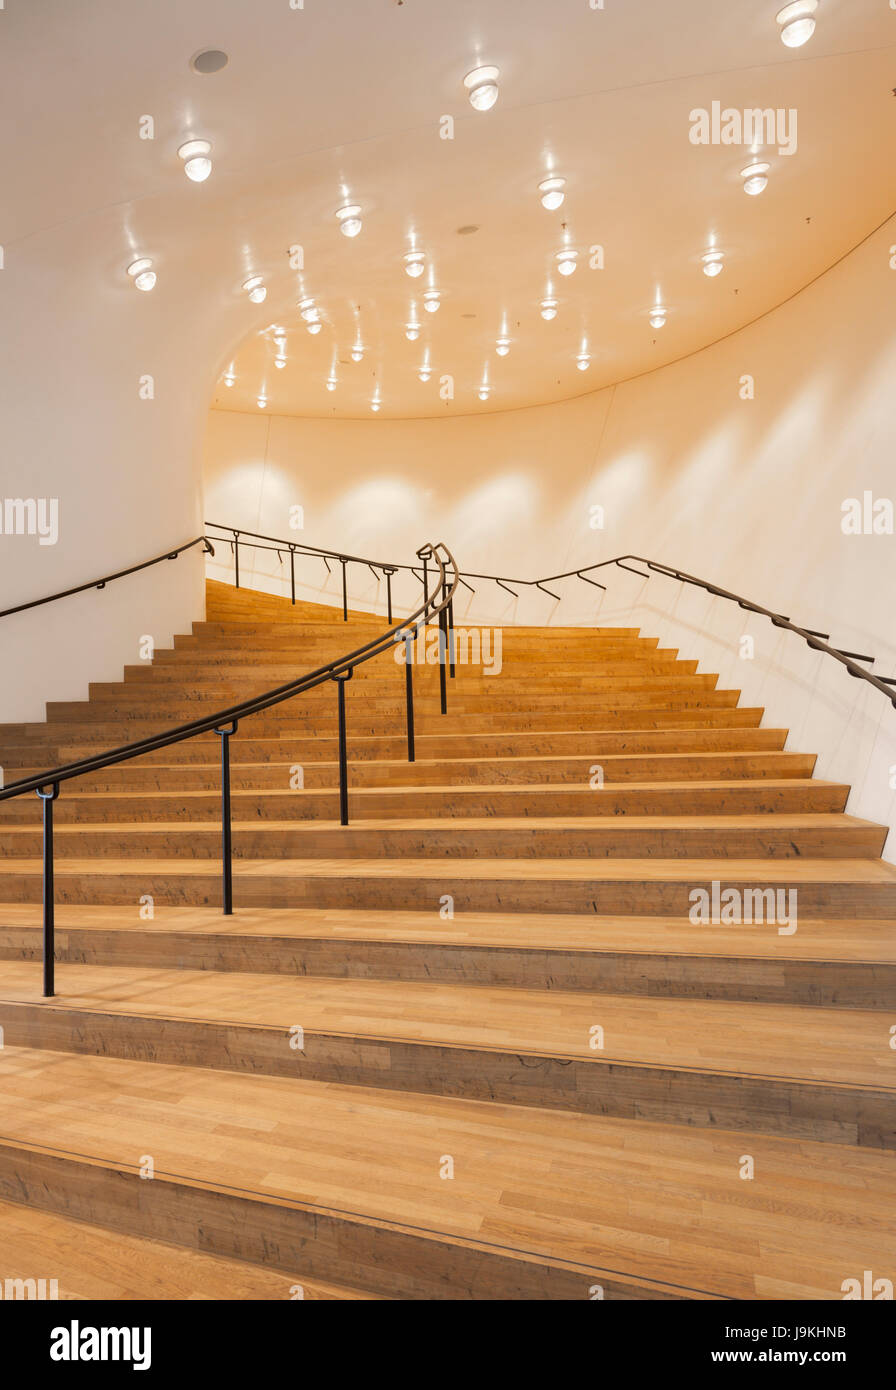 Innenaufnahme der Elbphilharmonie Concert Hall in Hamburg. Treppe zum großen Saal. Stockfoto